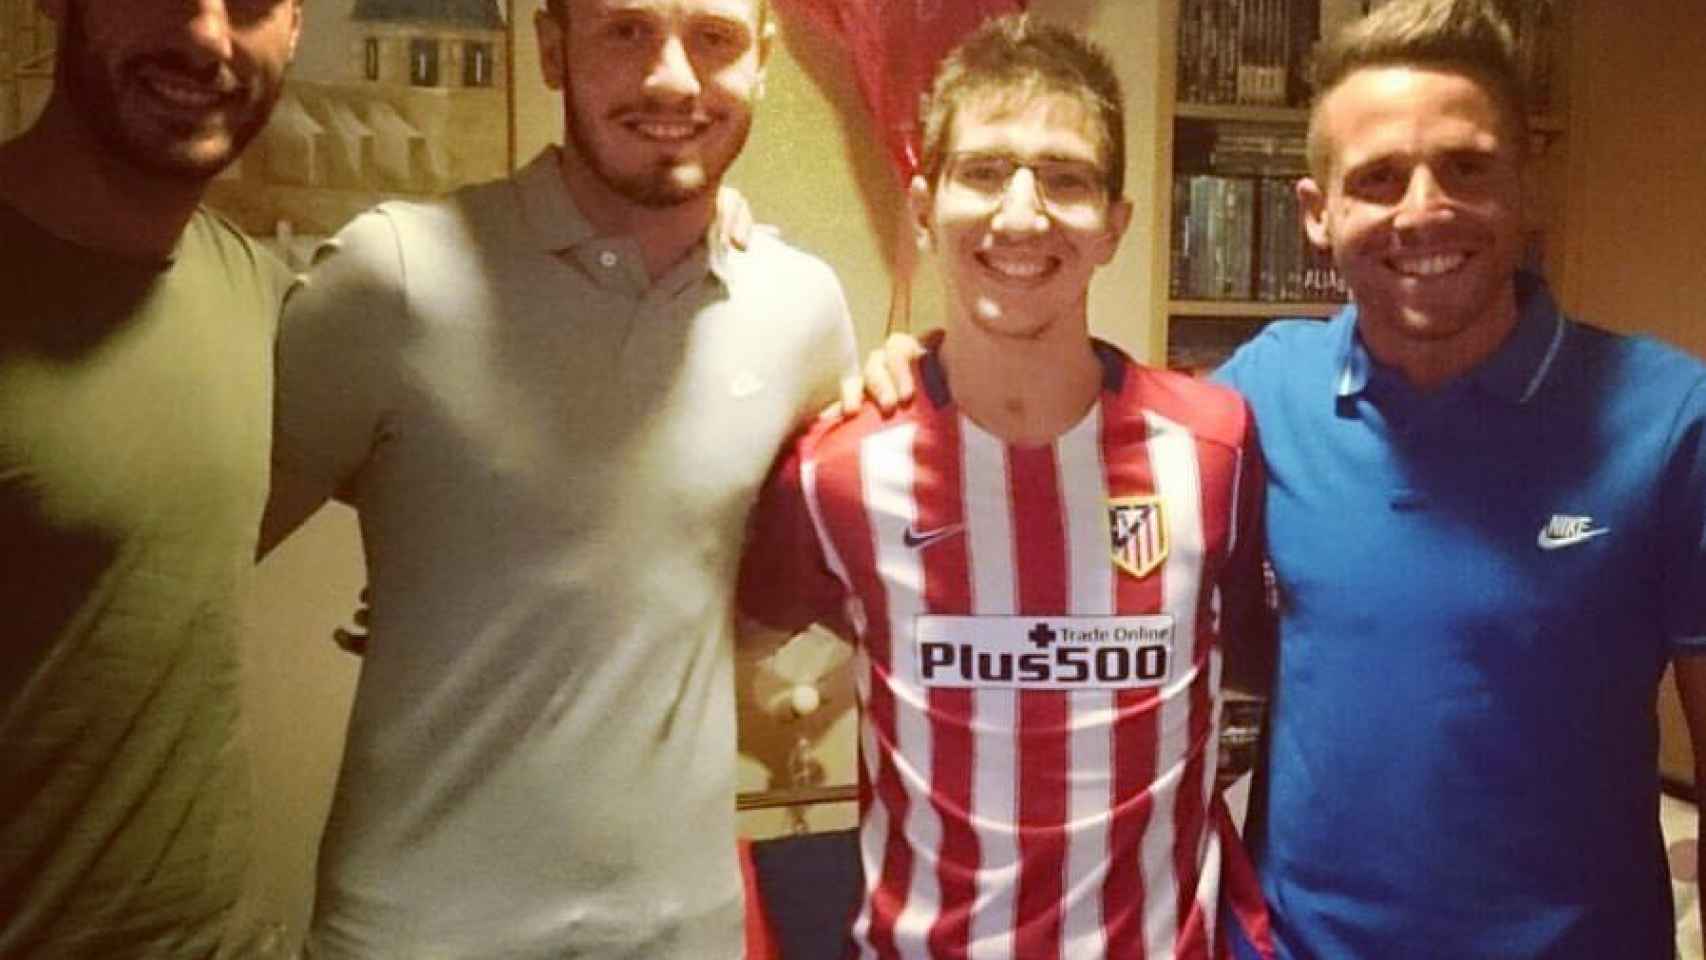 Aarón ha recibido el apoyo de, entre otros, el por entonces jugador del Atlético de Madrid, el ilicitano Saul Ñíguez.